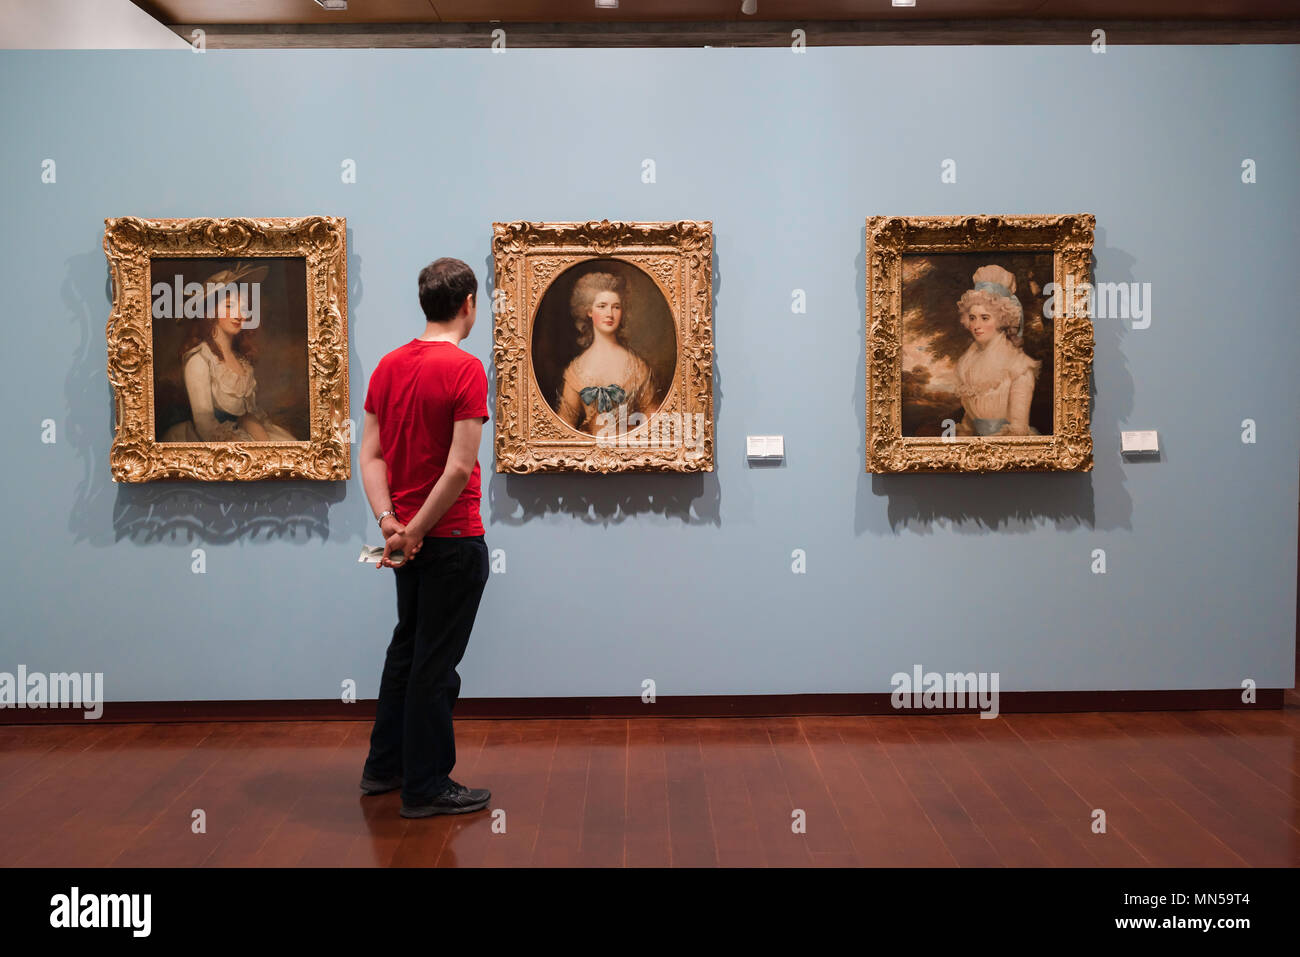 Menschenaussehende Kunst, ein Besucher des Lissabonner Museu Gulbenkian studiert drei englische Porträts aus dem 18th. Jahrhundert: (L bis R) Rowley, Gainsborough, Hoppner, Portugal Stockfoto